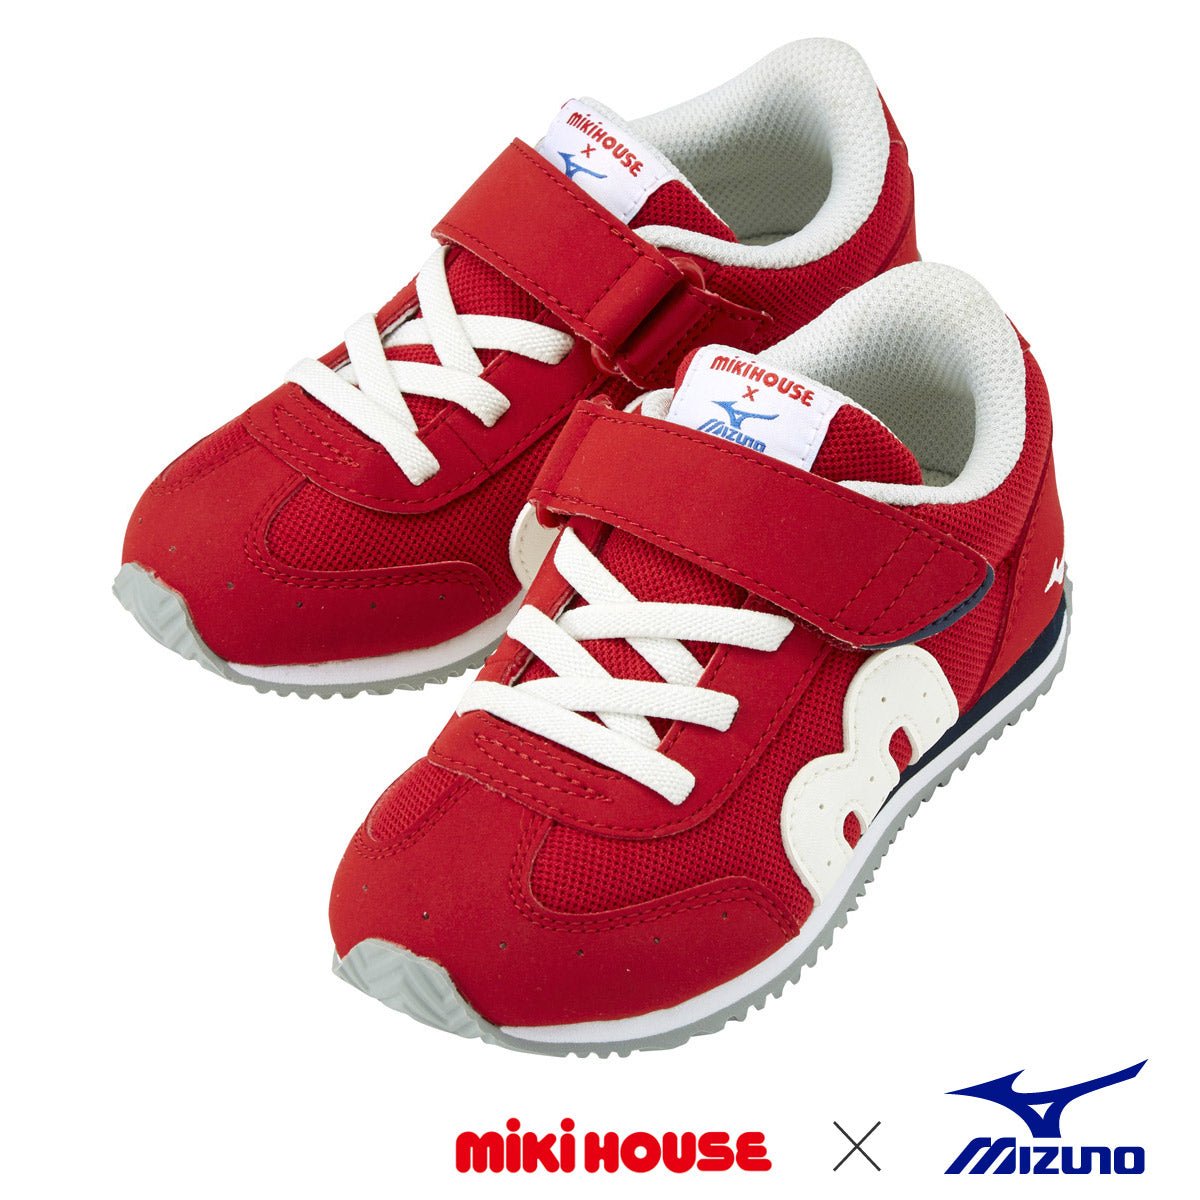 MIKI HOUSE & Mizuno Shoes for Kids - MIKI HOUSE USA